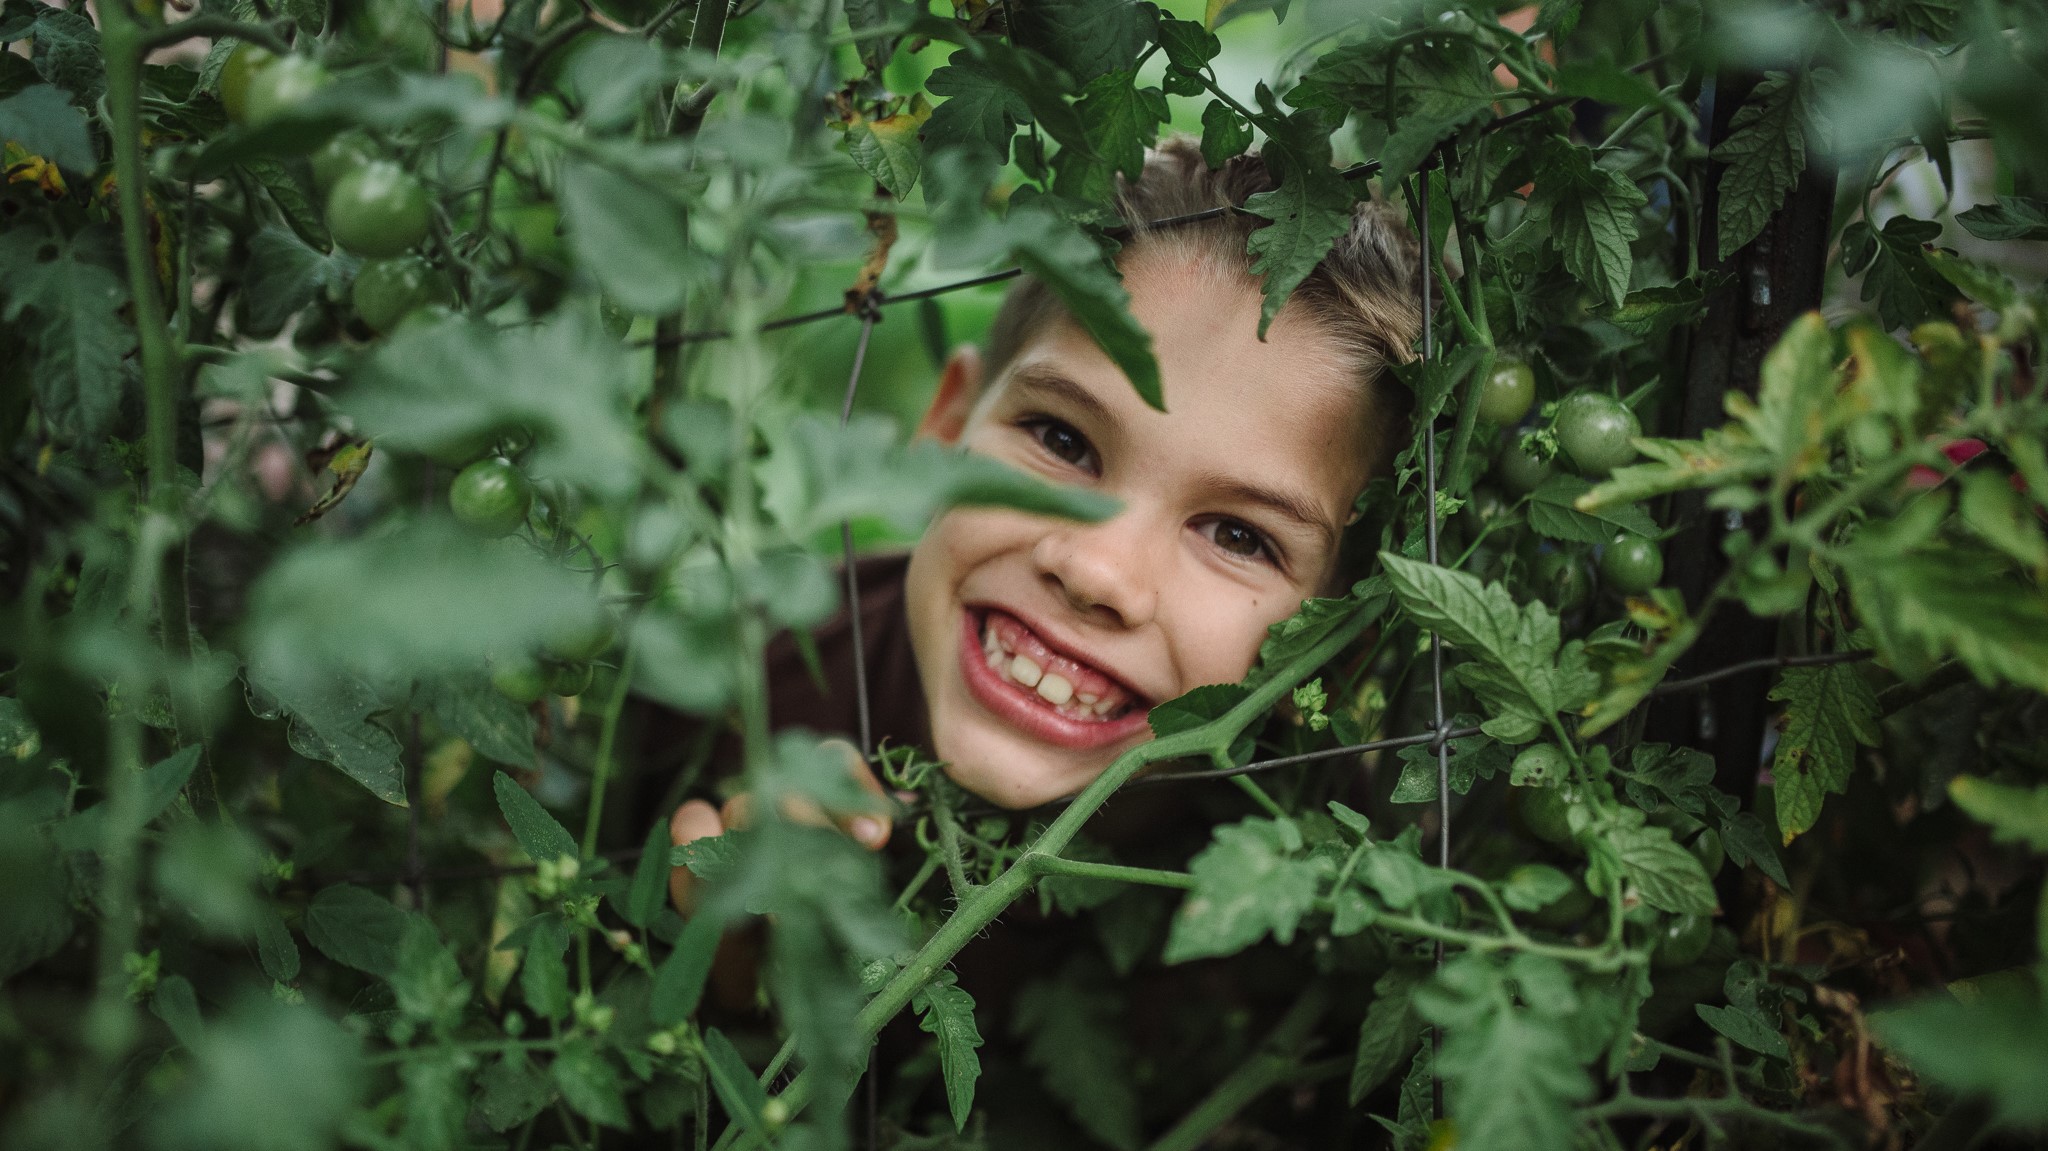 Smiling through the tomato vines.